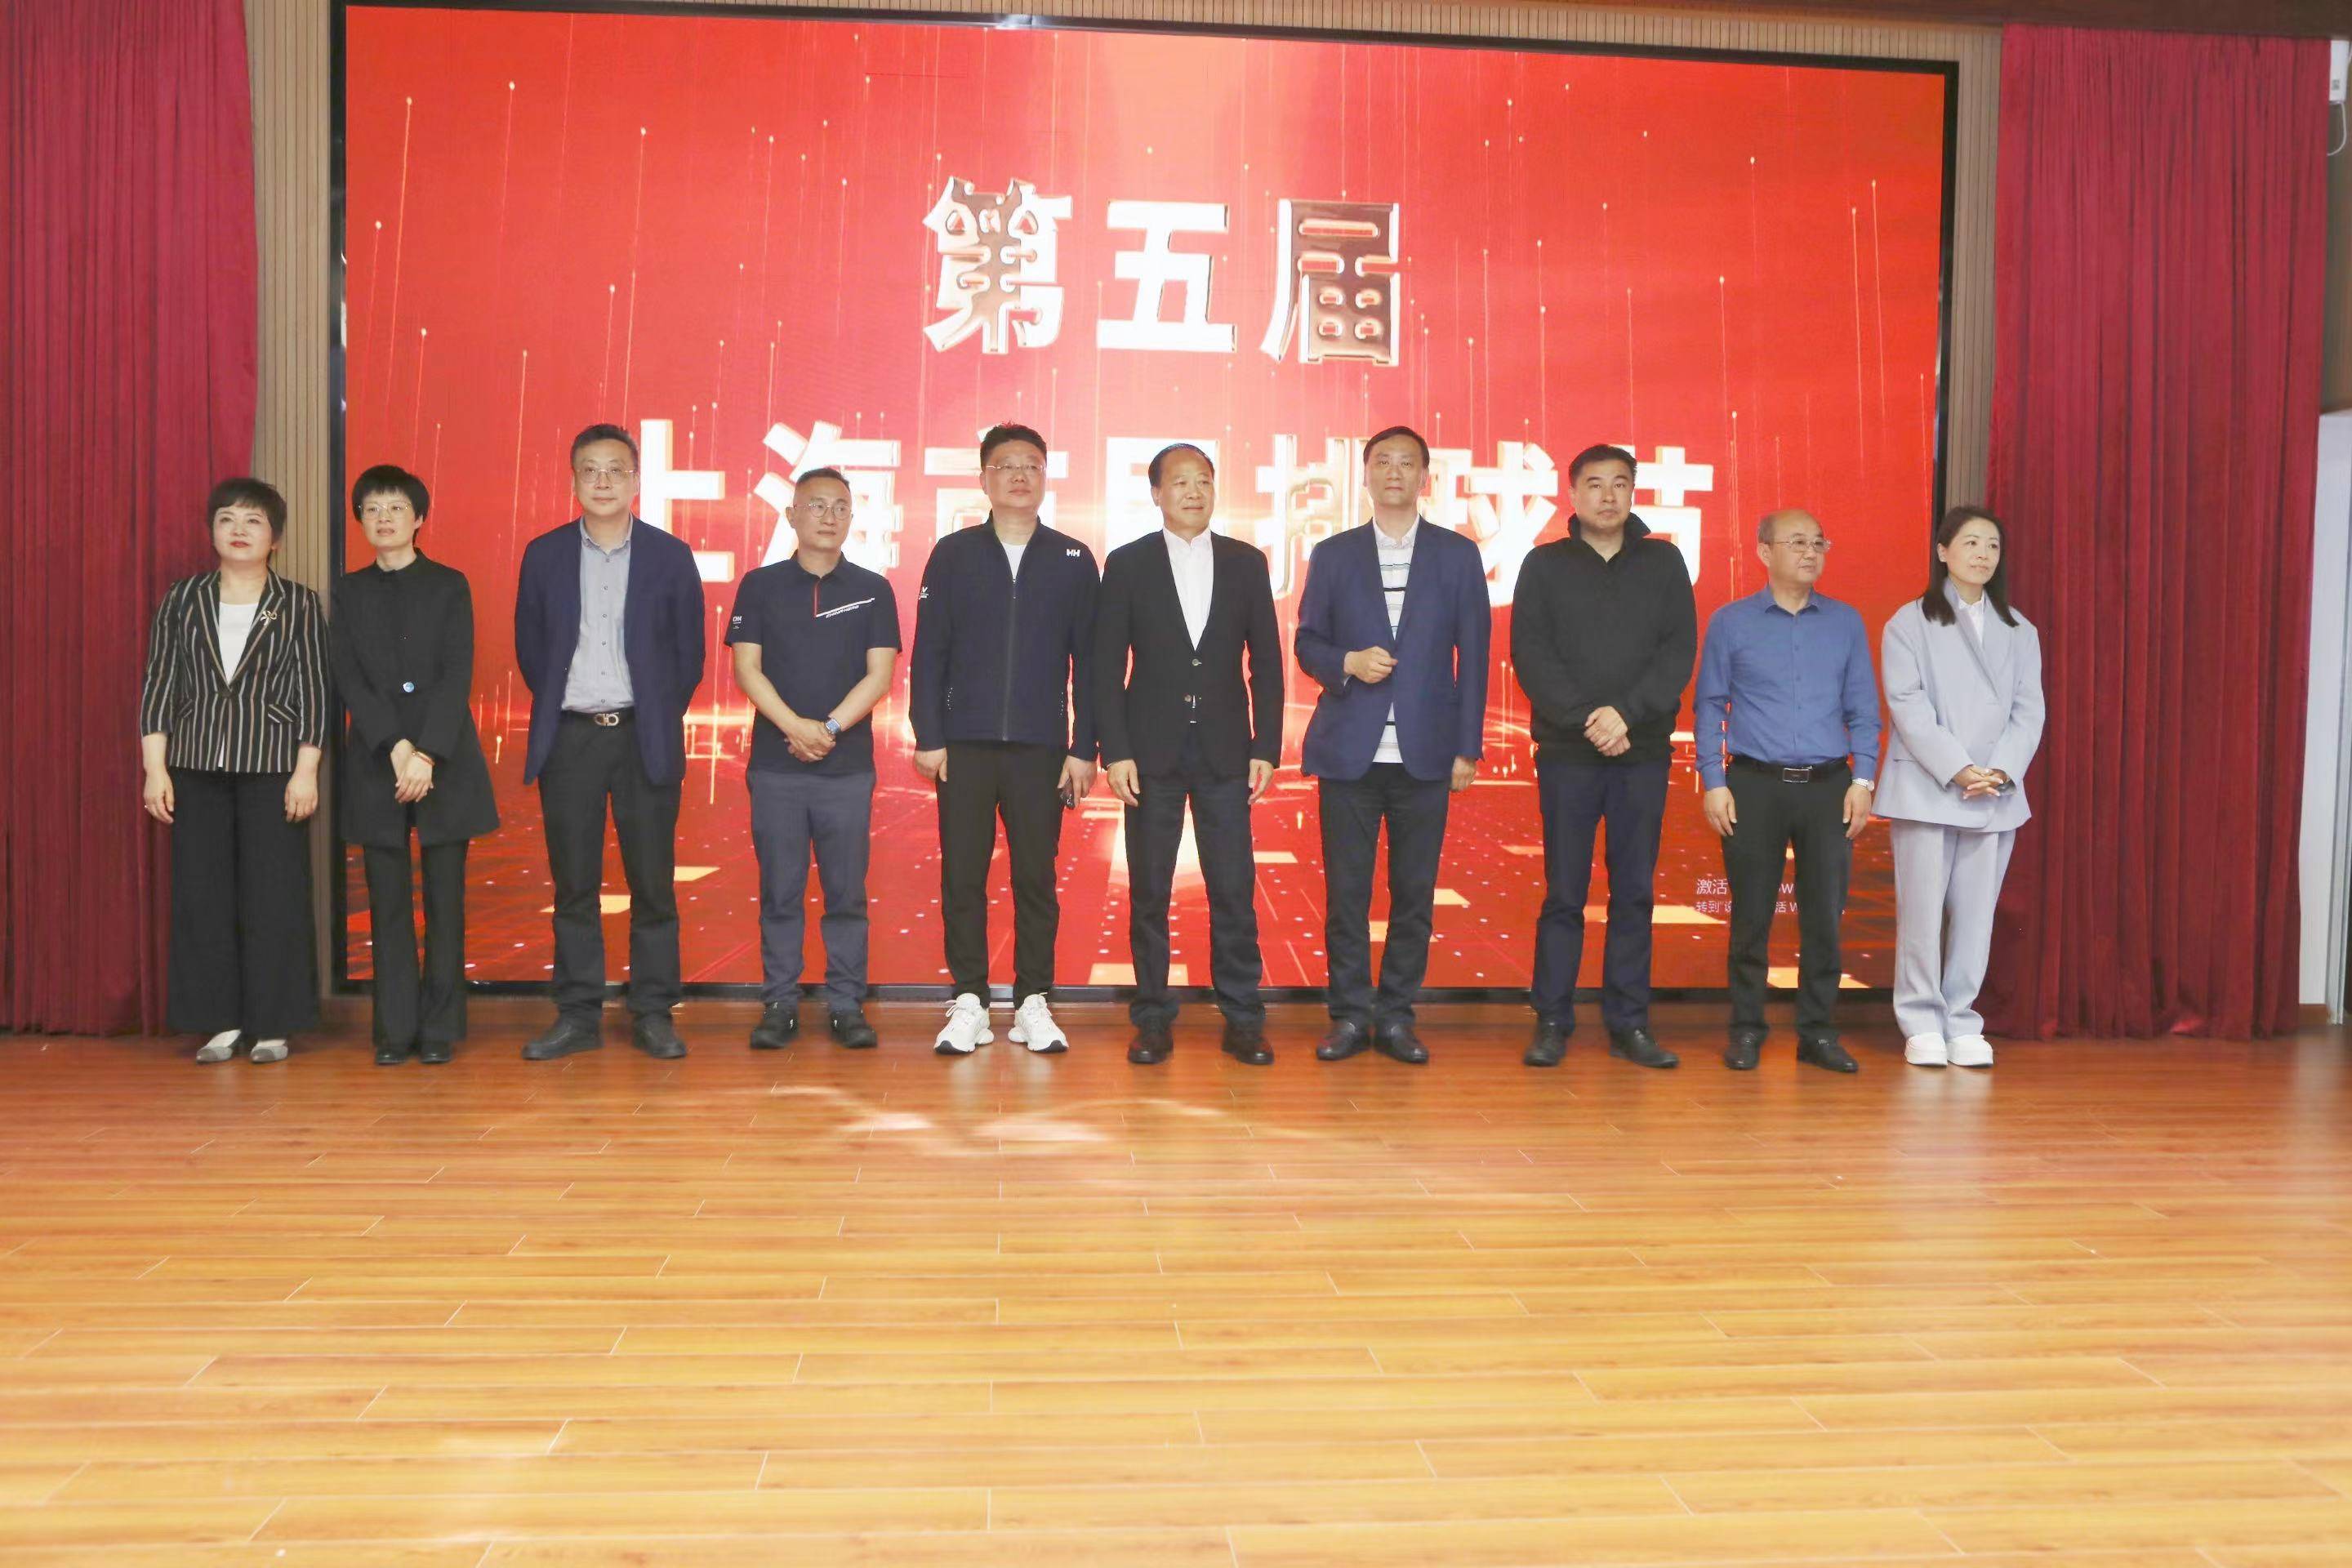 第五届上海市民排球节开幕式暨排球进校园活动 喜迎四名形象大使 